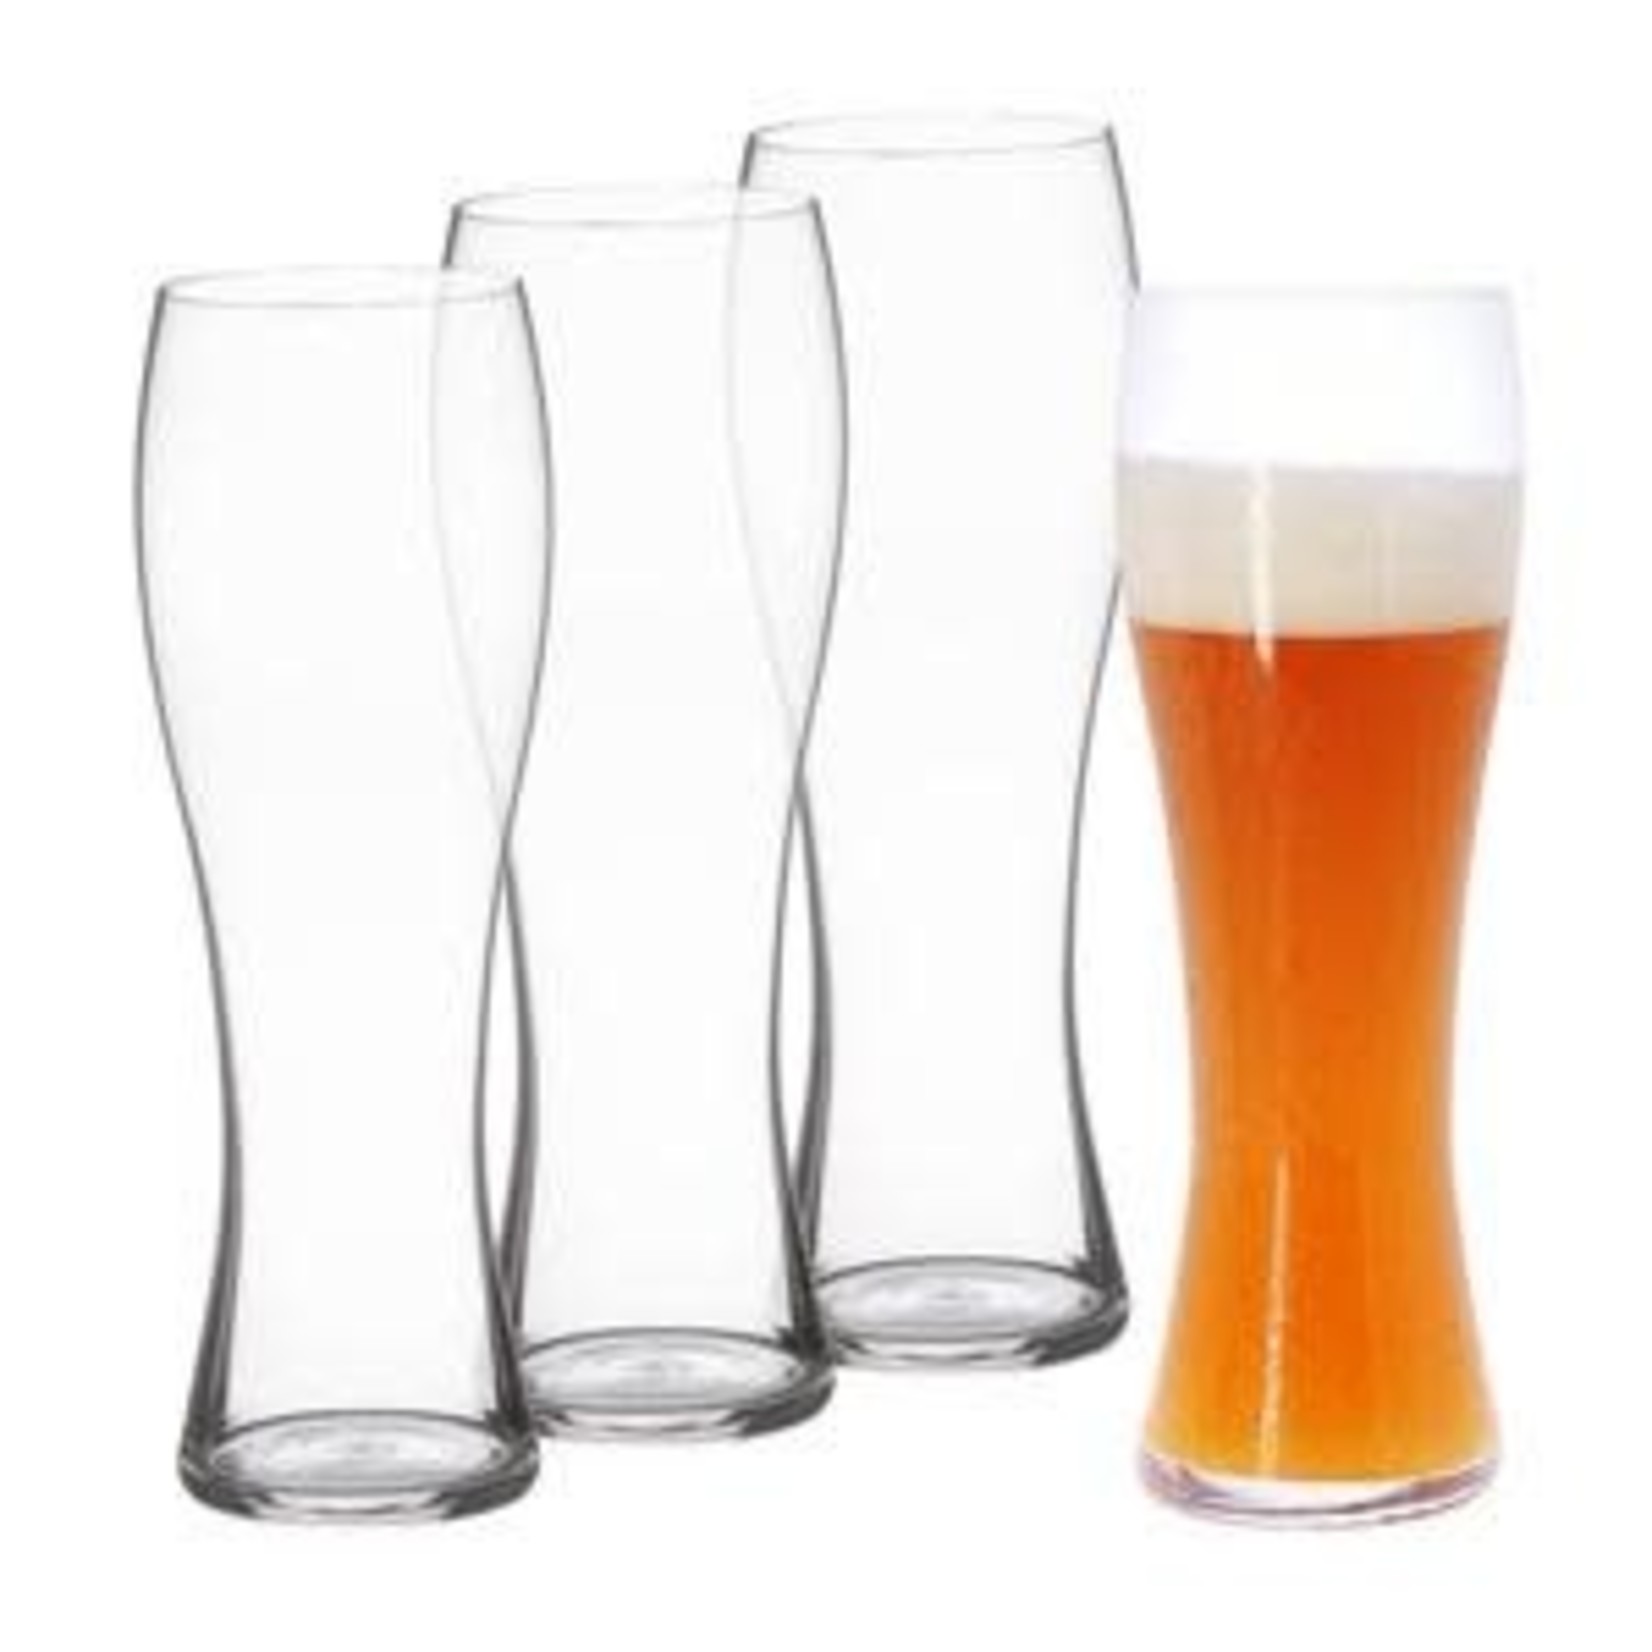 Spiegelau Spiegelau Hefeweizen Beer Classics set of 4